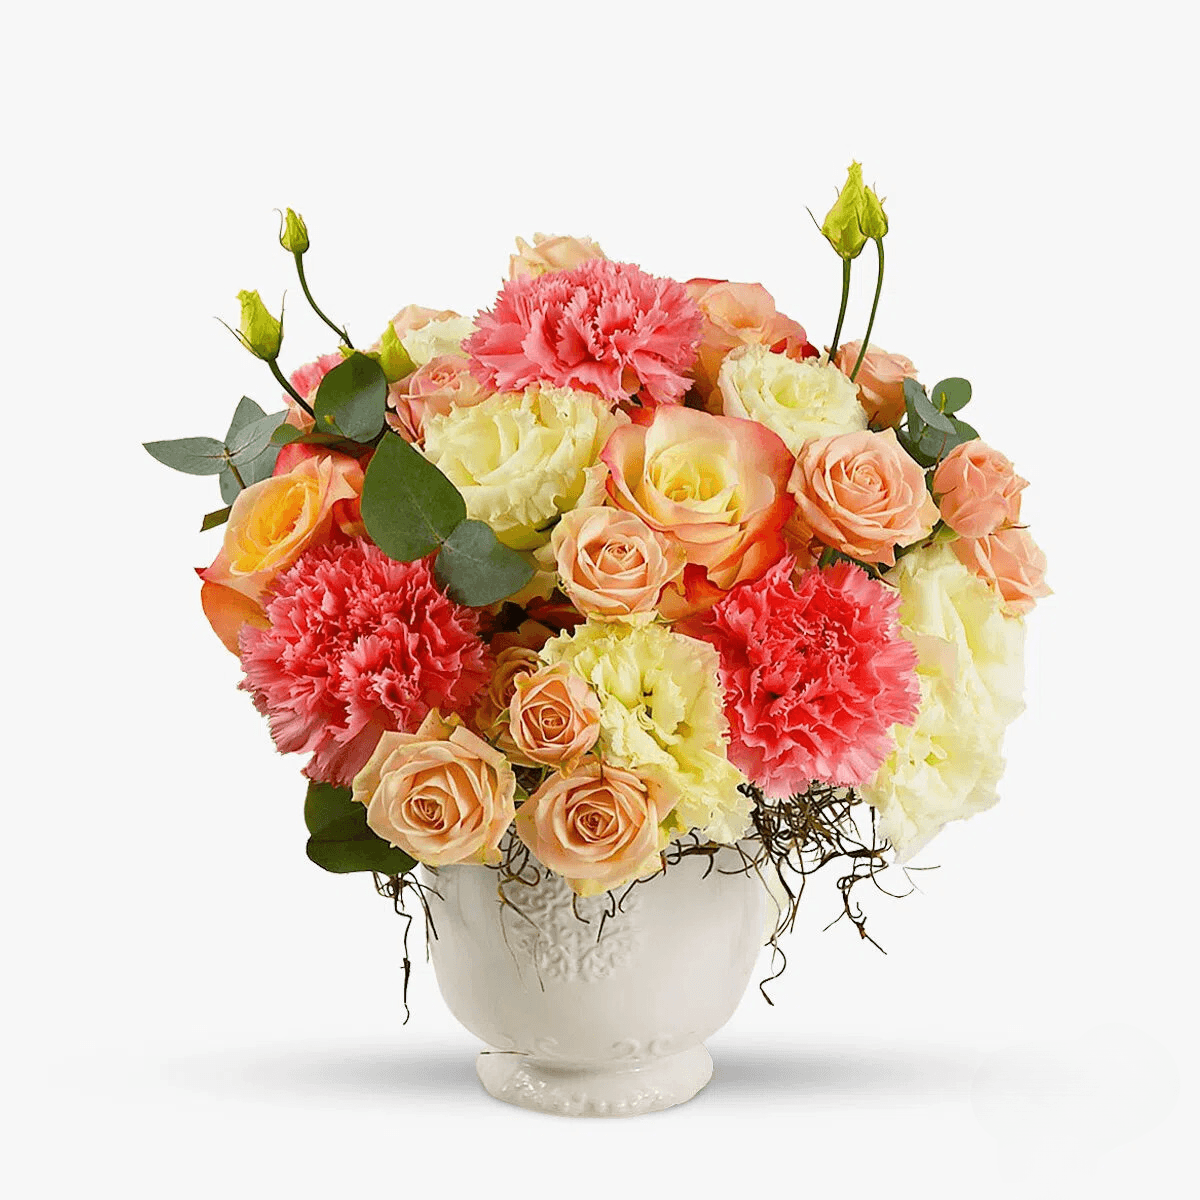 Buchet de flori – Aranjament floral Elegant – premium Aranjament